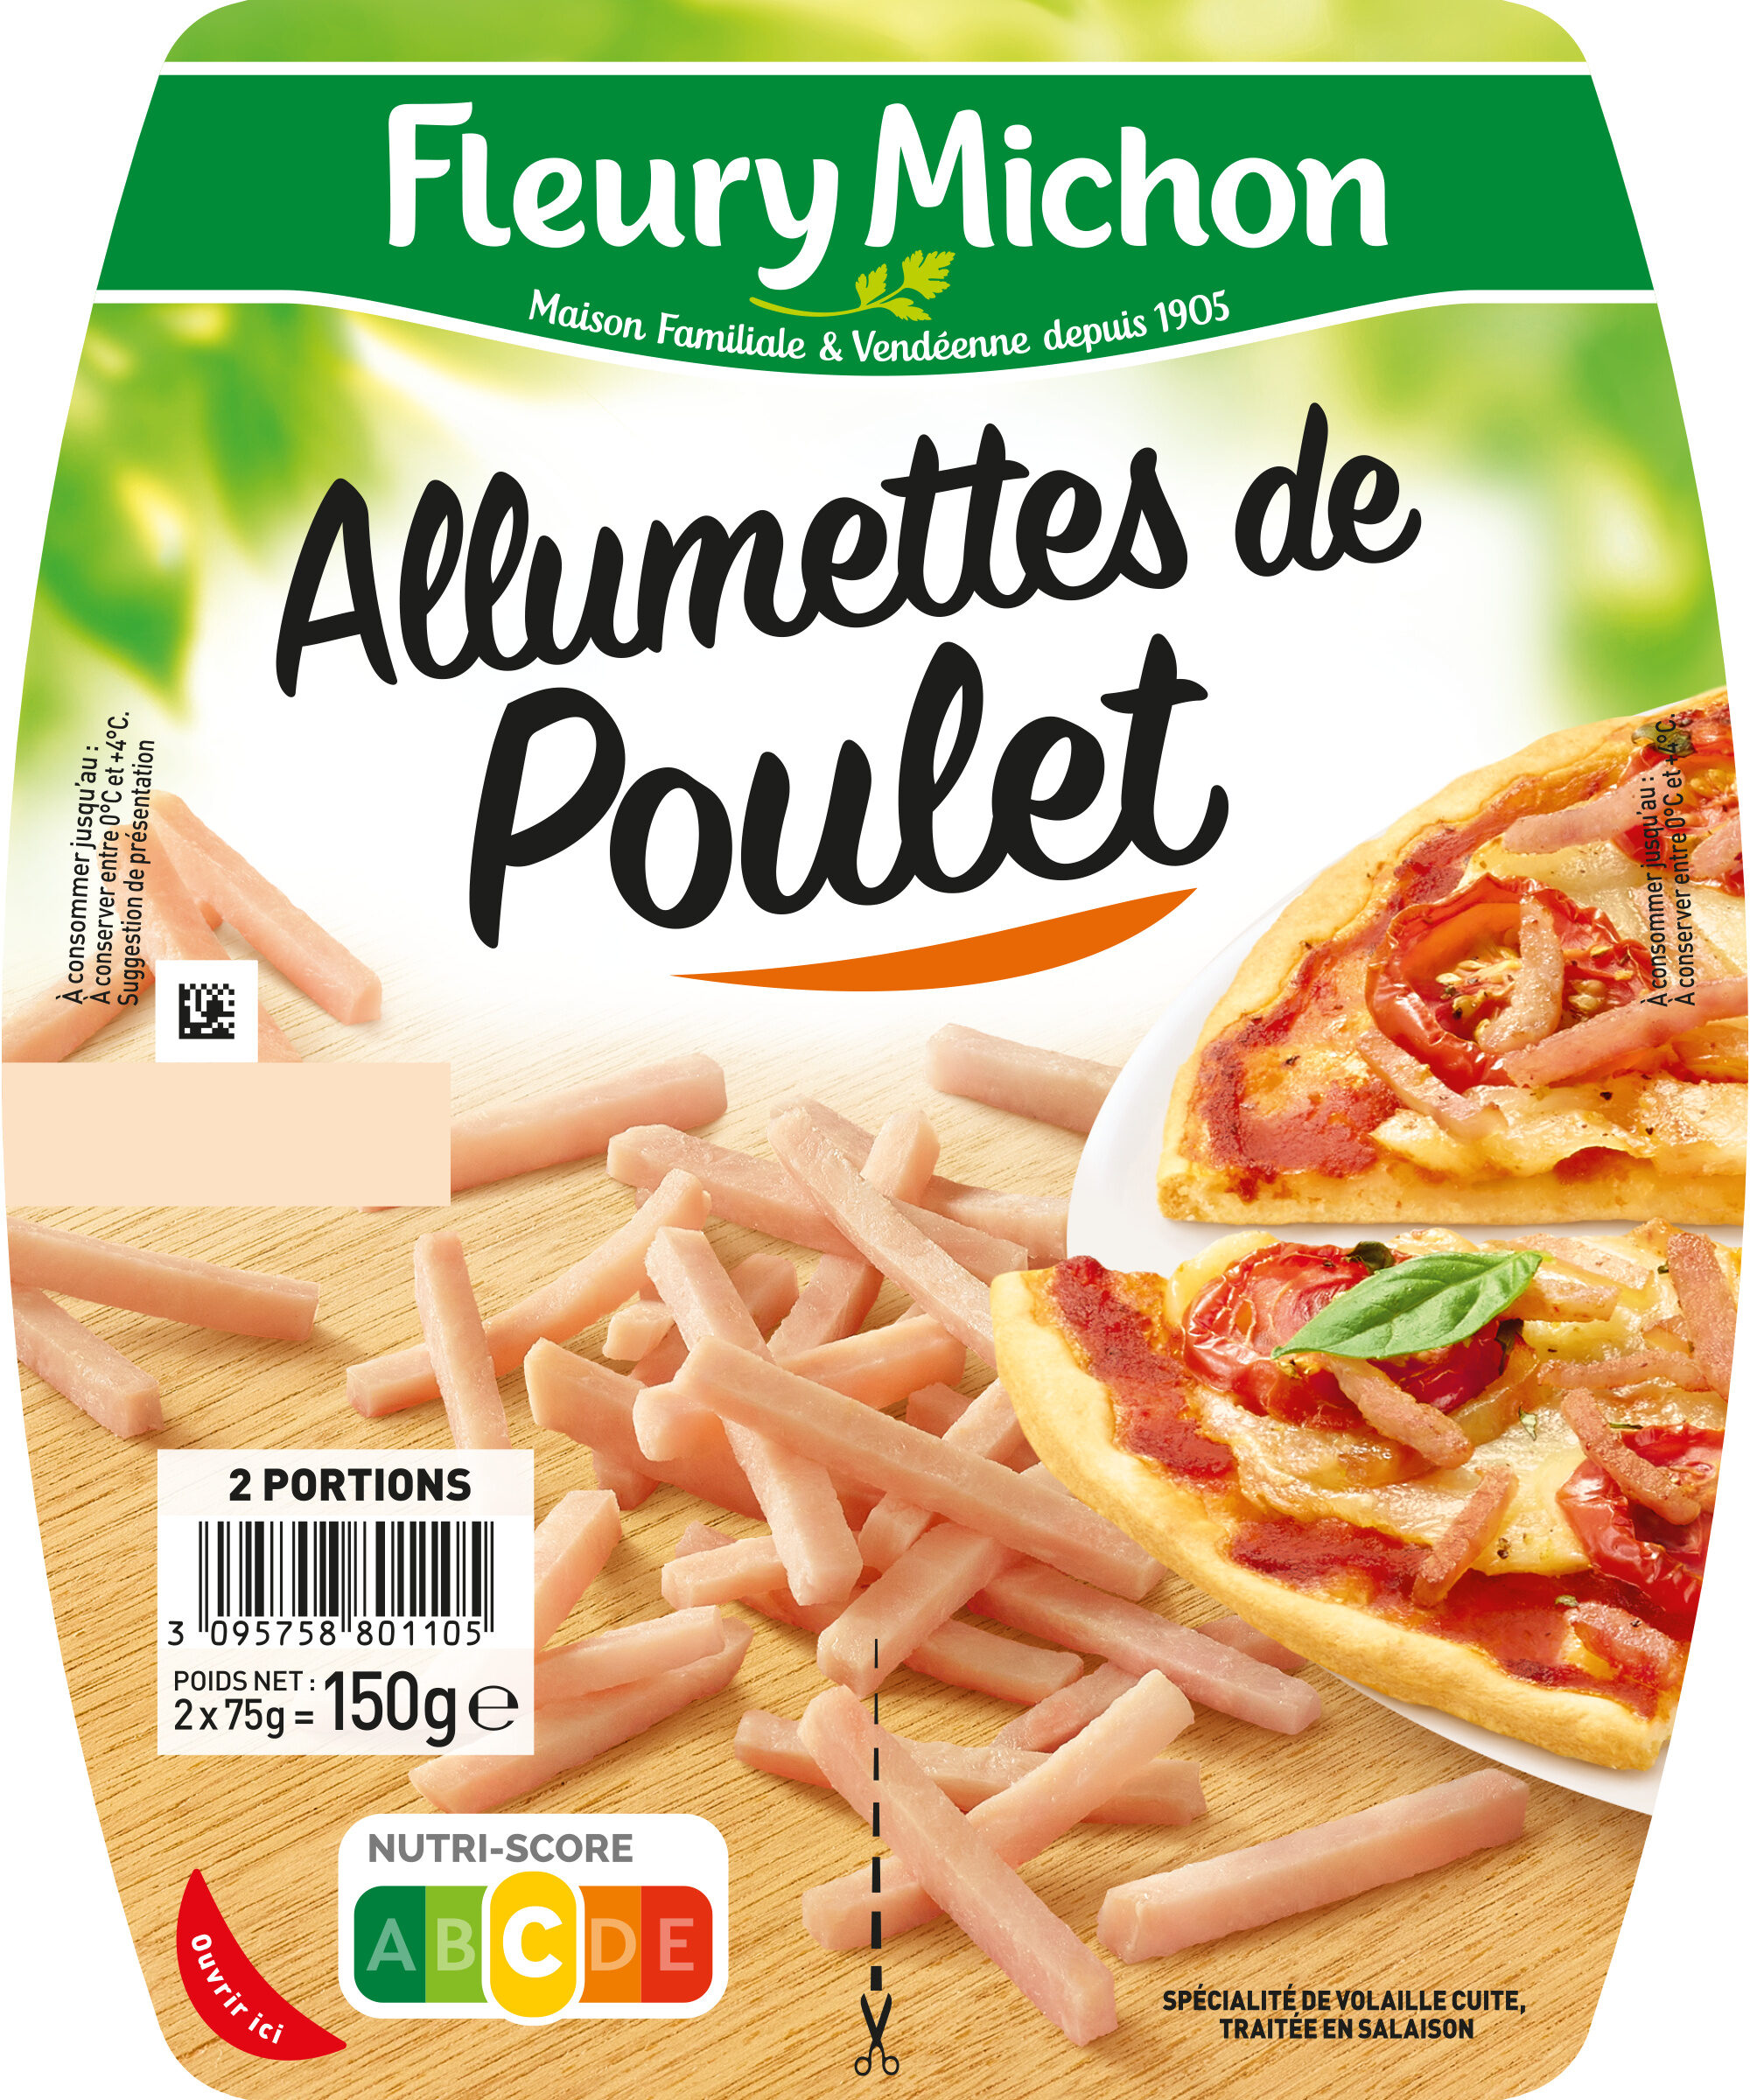 Allumettes de Poulet - Nature - Product - fr